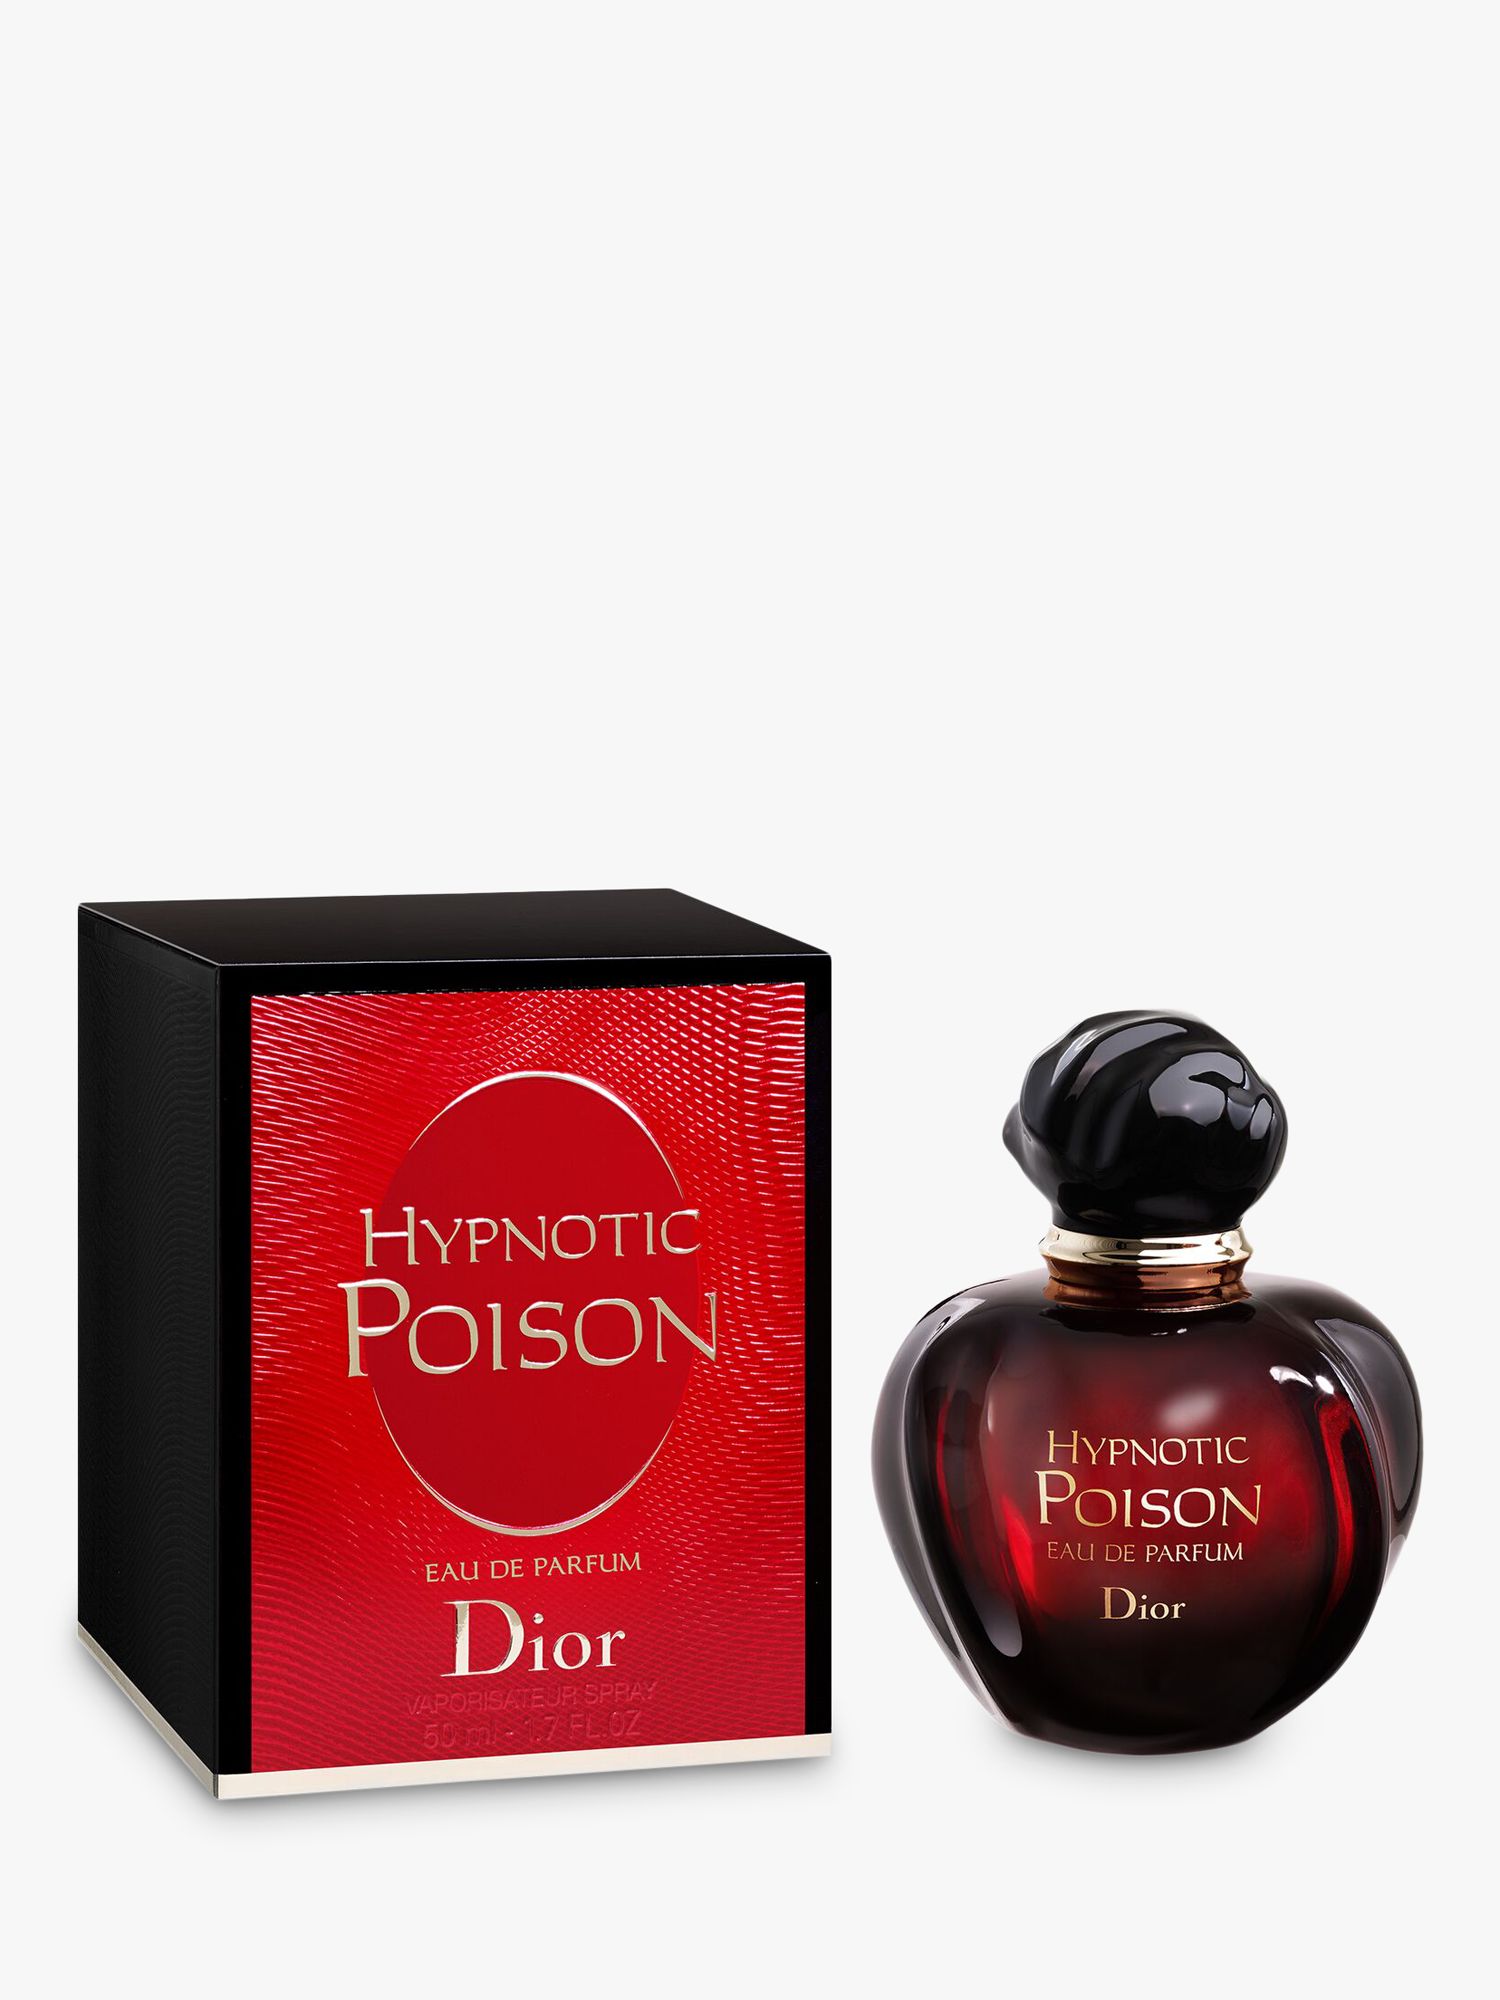 parfum dior poison hypnotic